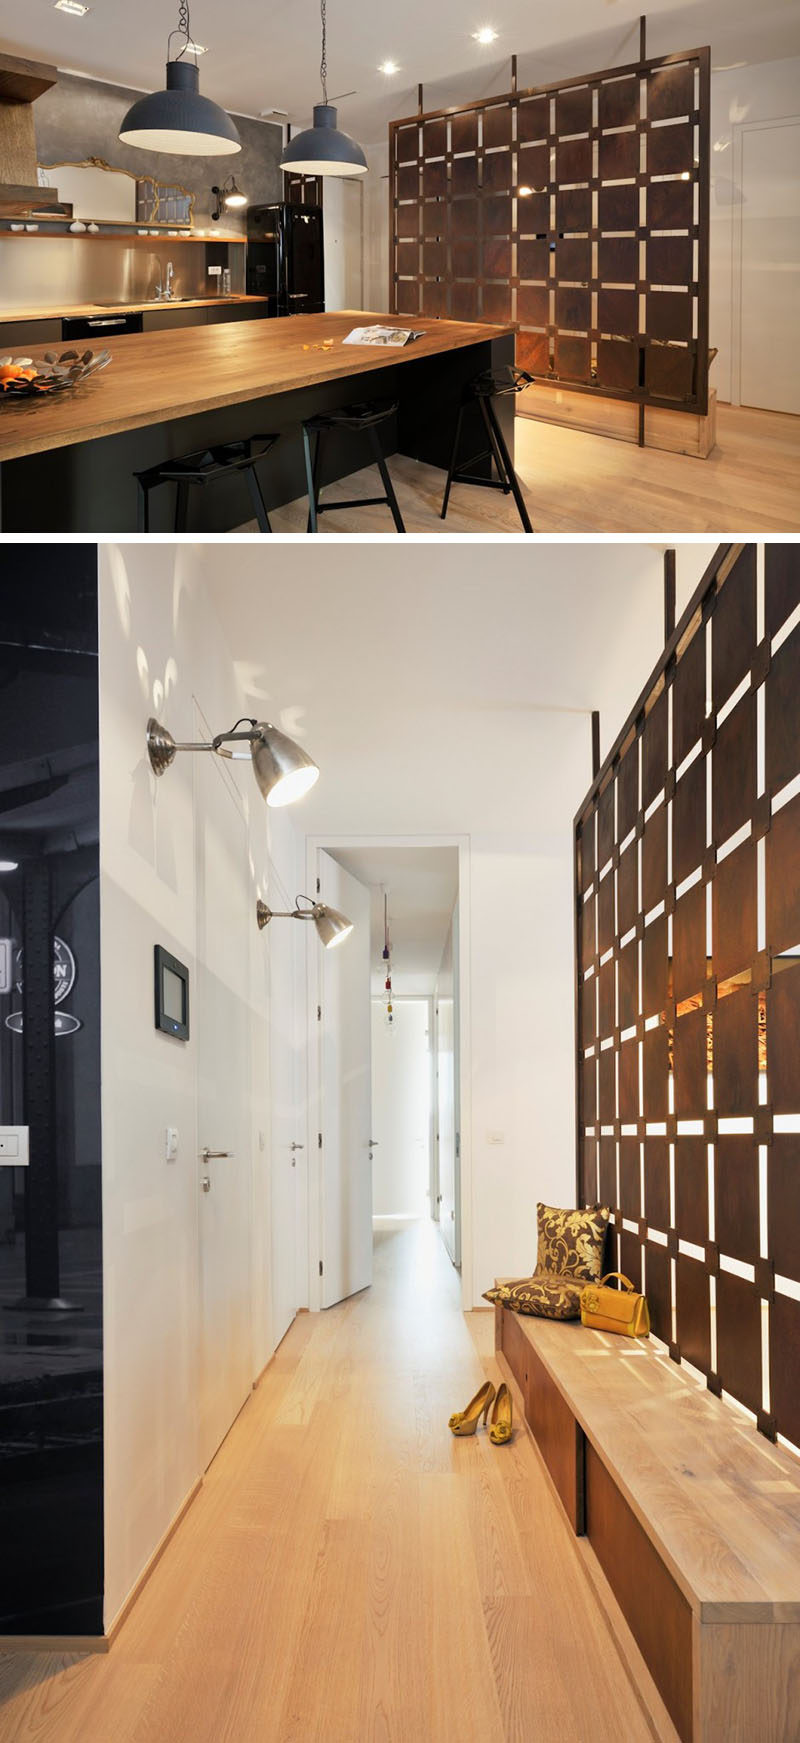 15 креативных идей для перегородок // Стеновые панели художественной геометрической формы разделяют прихожую и кухню в этой словенской квартире. #ModernRoomDivider #RoomDivider #InteriorDesign # Interiors